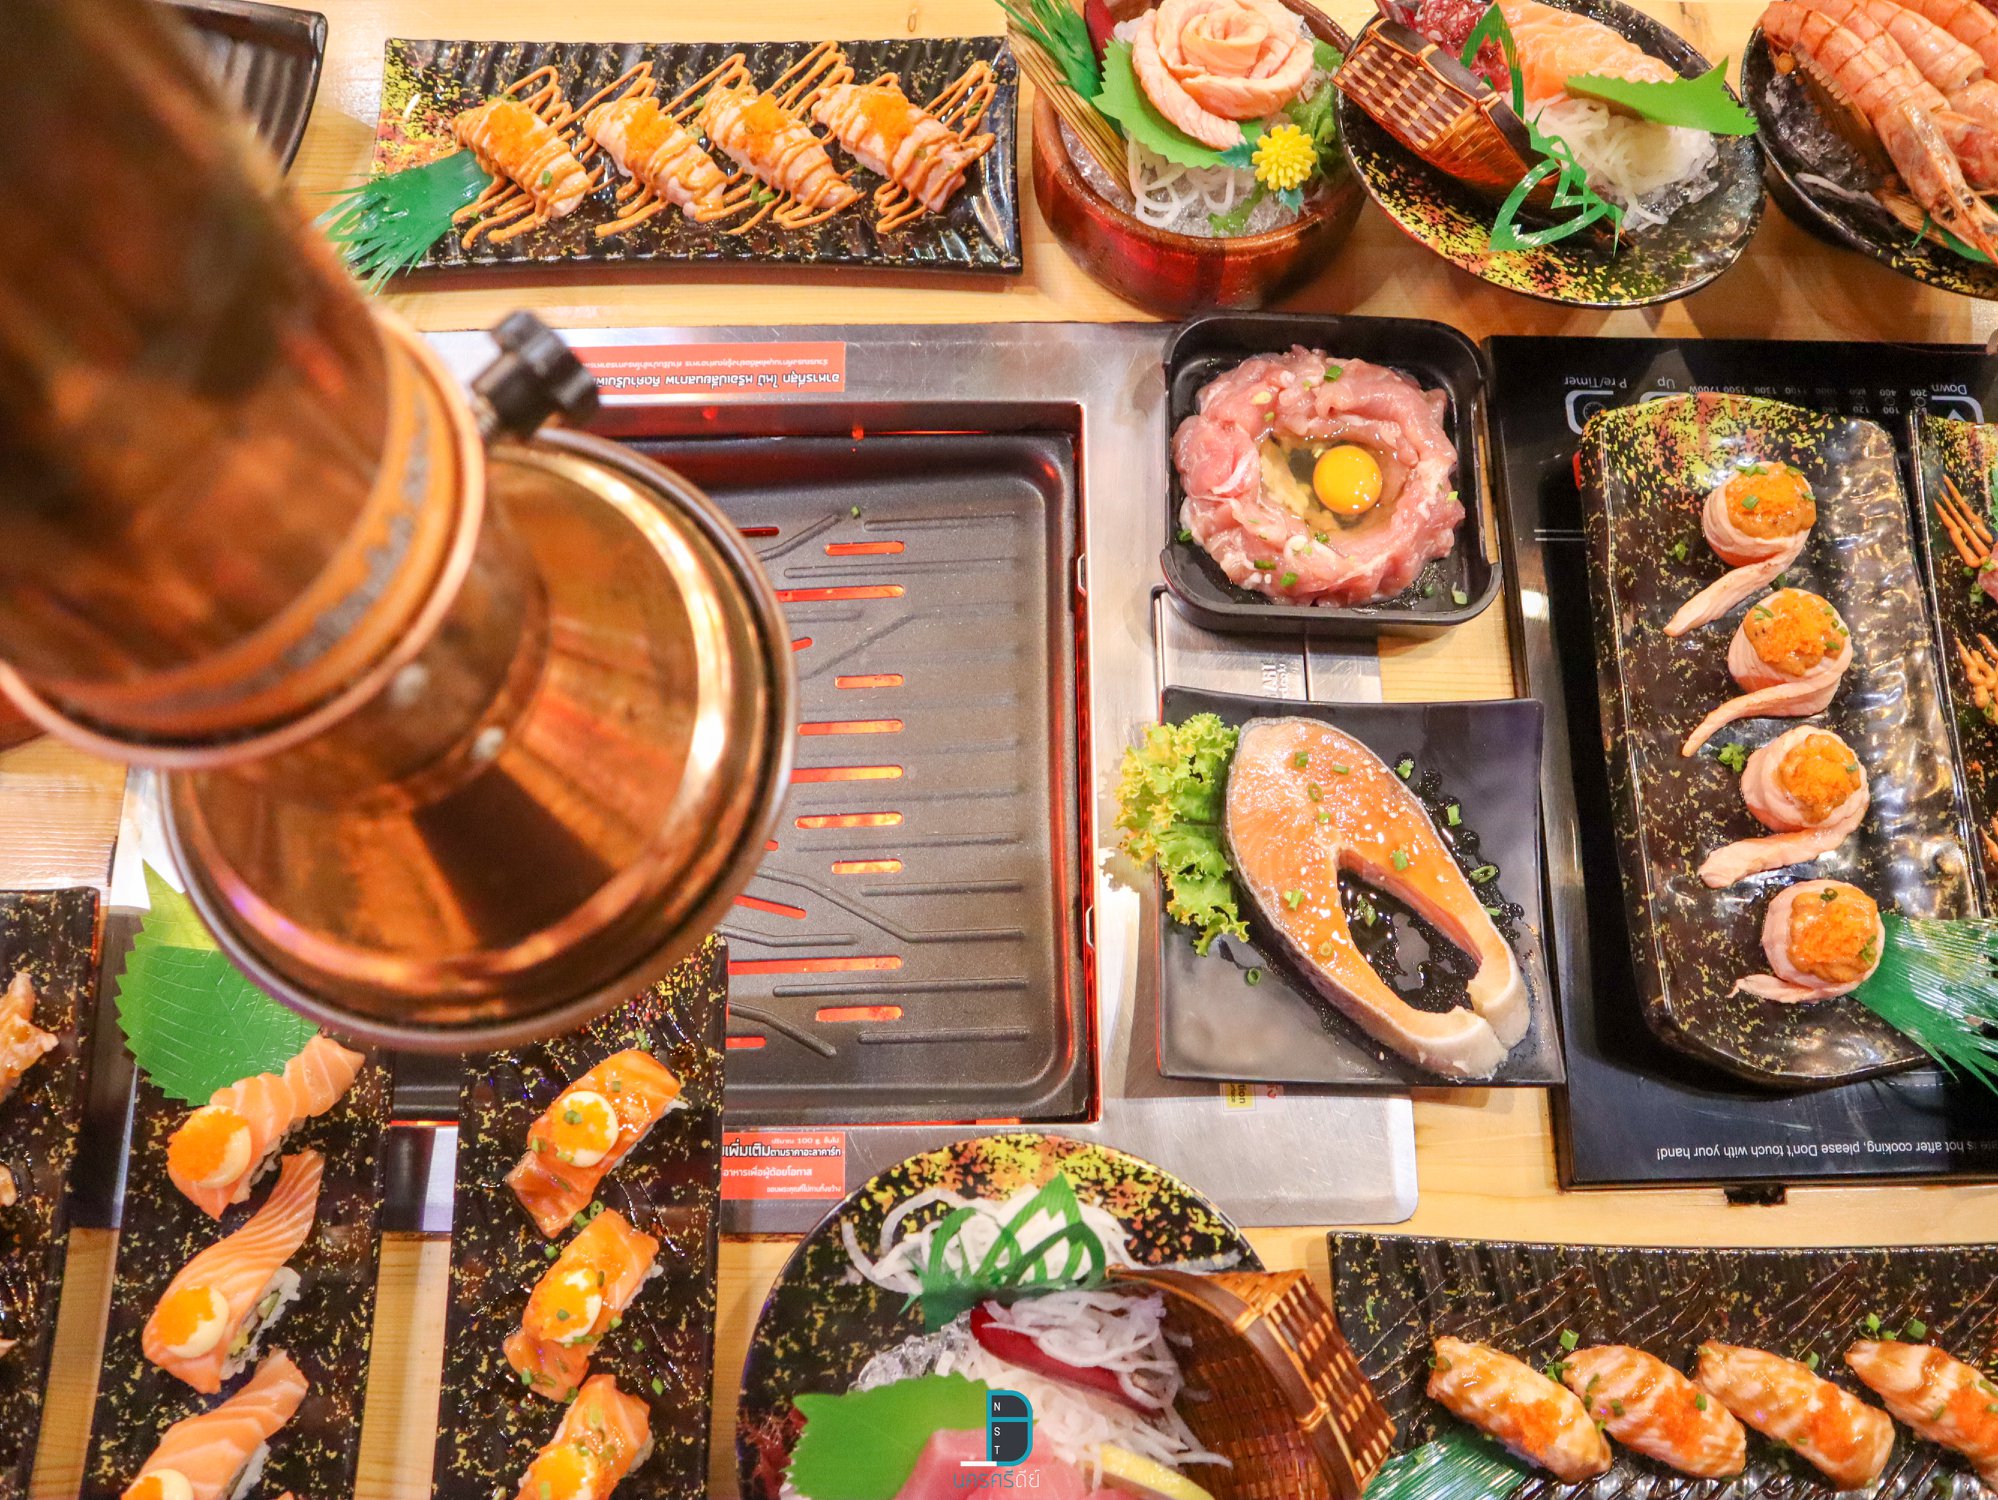   ชาบู,ปิ้งย่าง,อาหารญี่ปุ่น,ซาซิมิ,ซูชิ,ของกิน,นครศรีธรรมราช,อร่อย